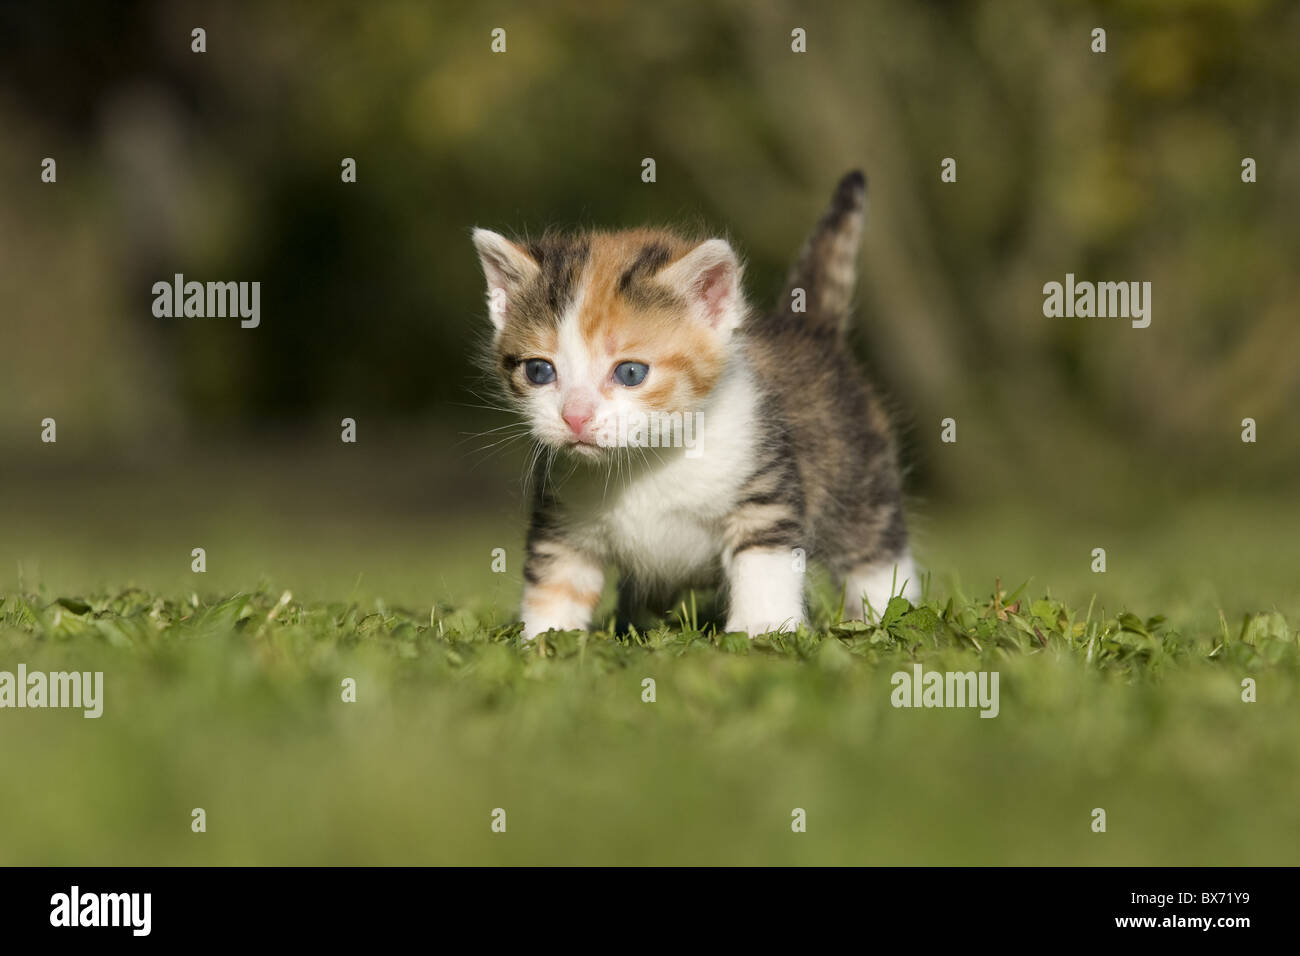 Katze, Kaetzchen auf Wiese, Cat, kitten on a meadow Stock Photo